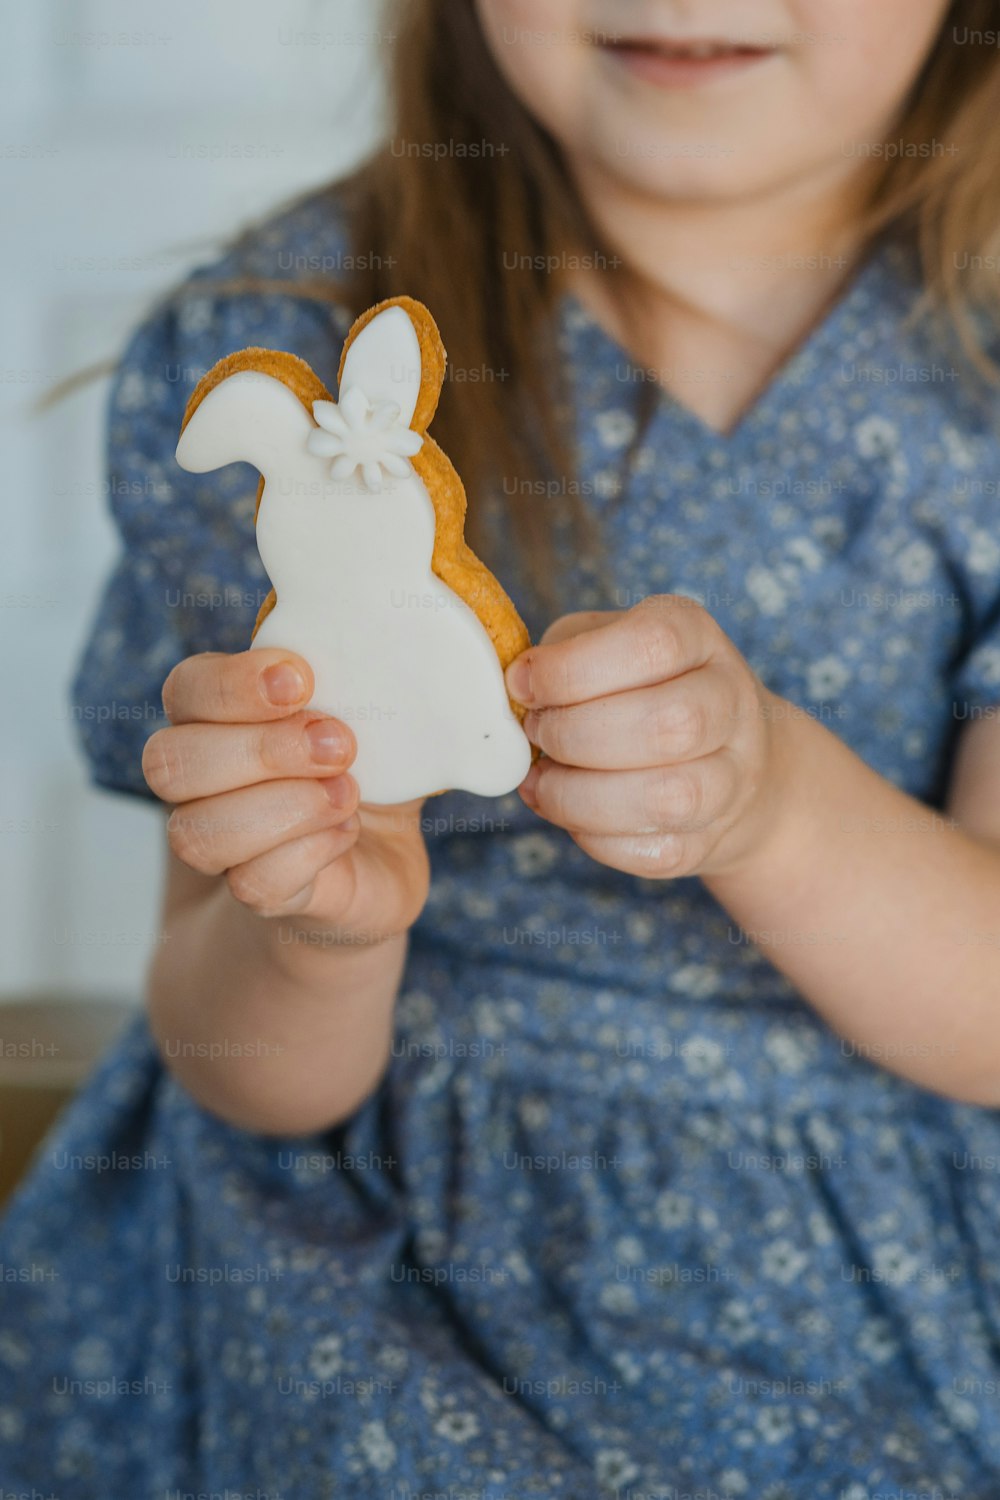 Una niña sosteniendo una galleta con forma de conejito